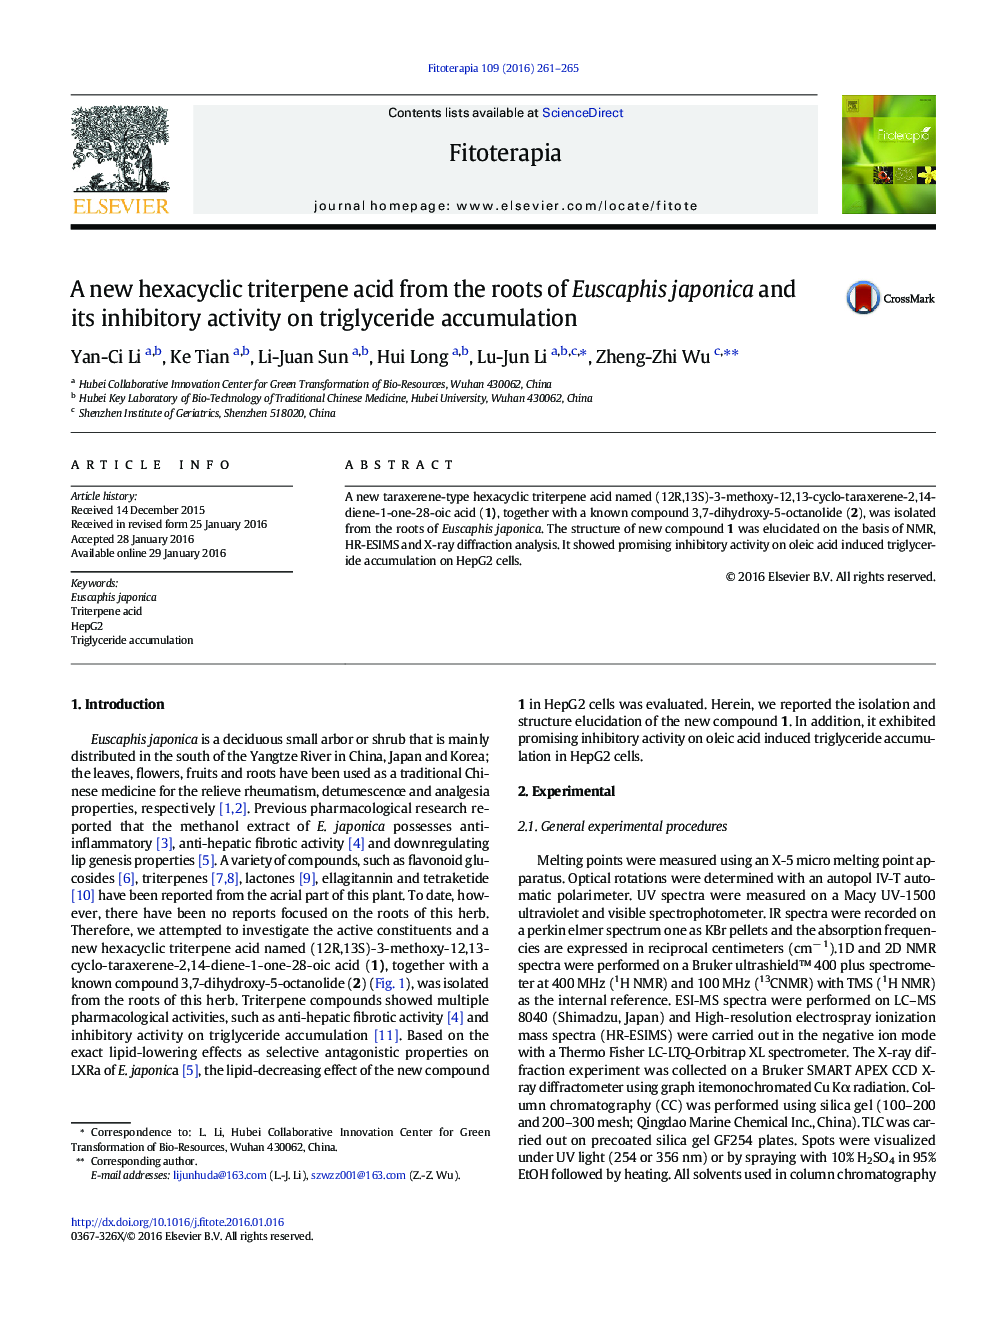 اسید hexacyclic triterpene جدید از ریشه های Euscaphis japonica و فعالیت مهارکننده آن بر تجمع تری گلیسرید